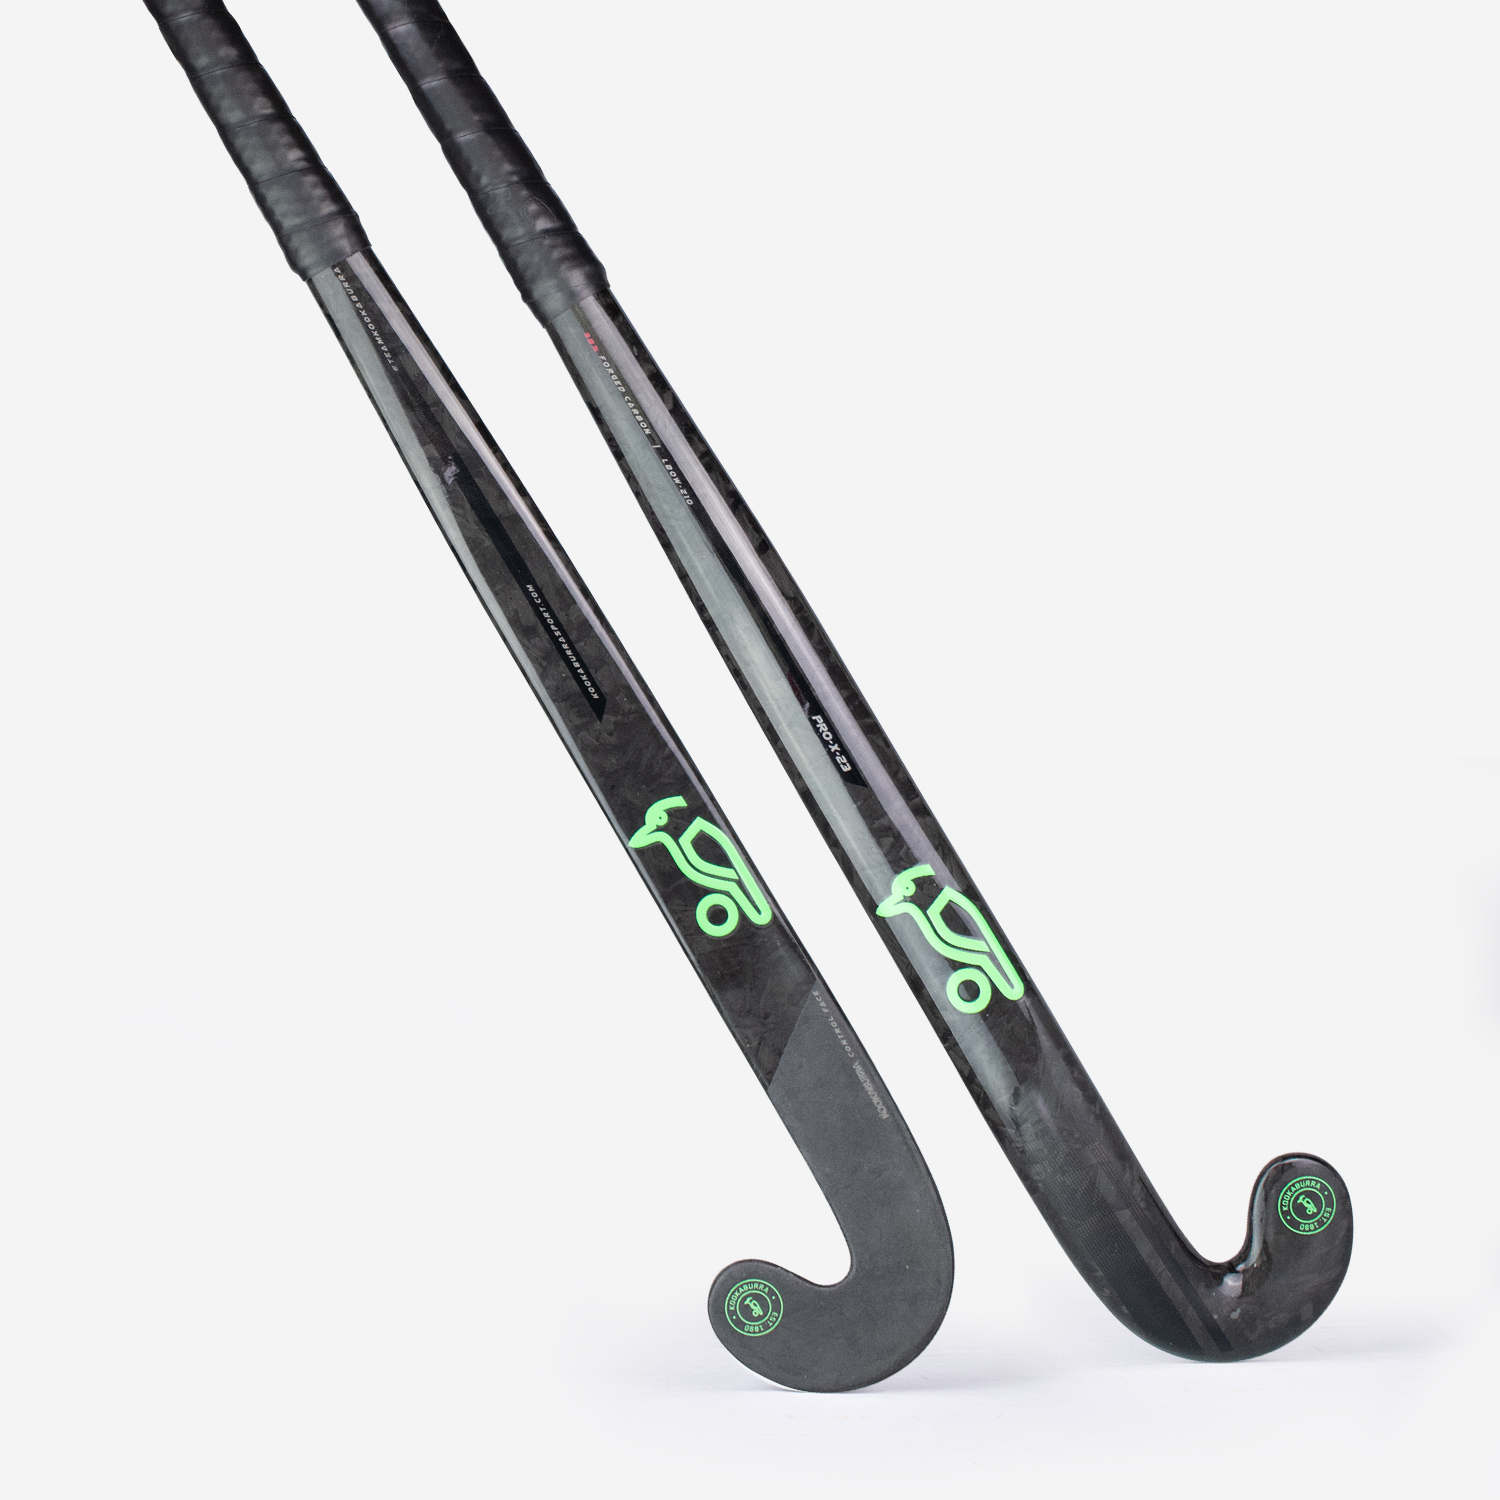 Kookaburra Pro X23 hockey Stick